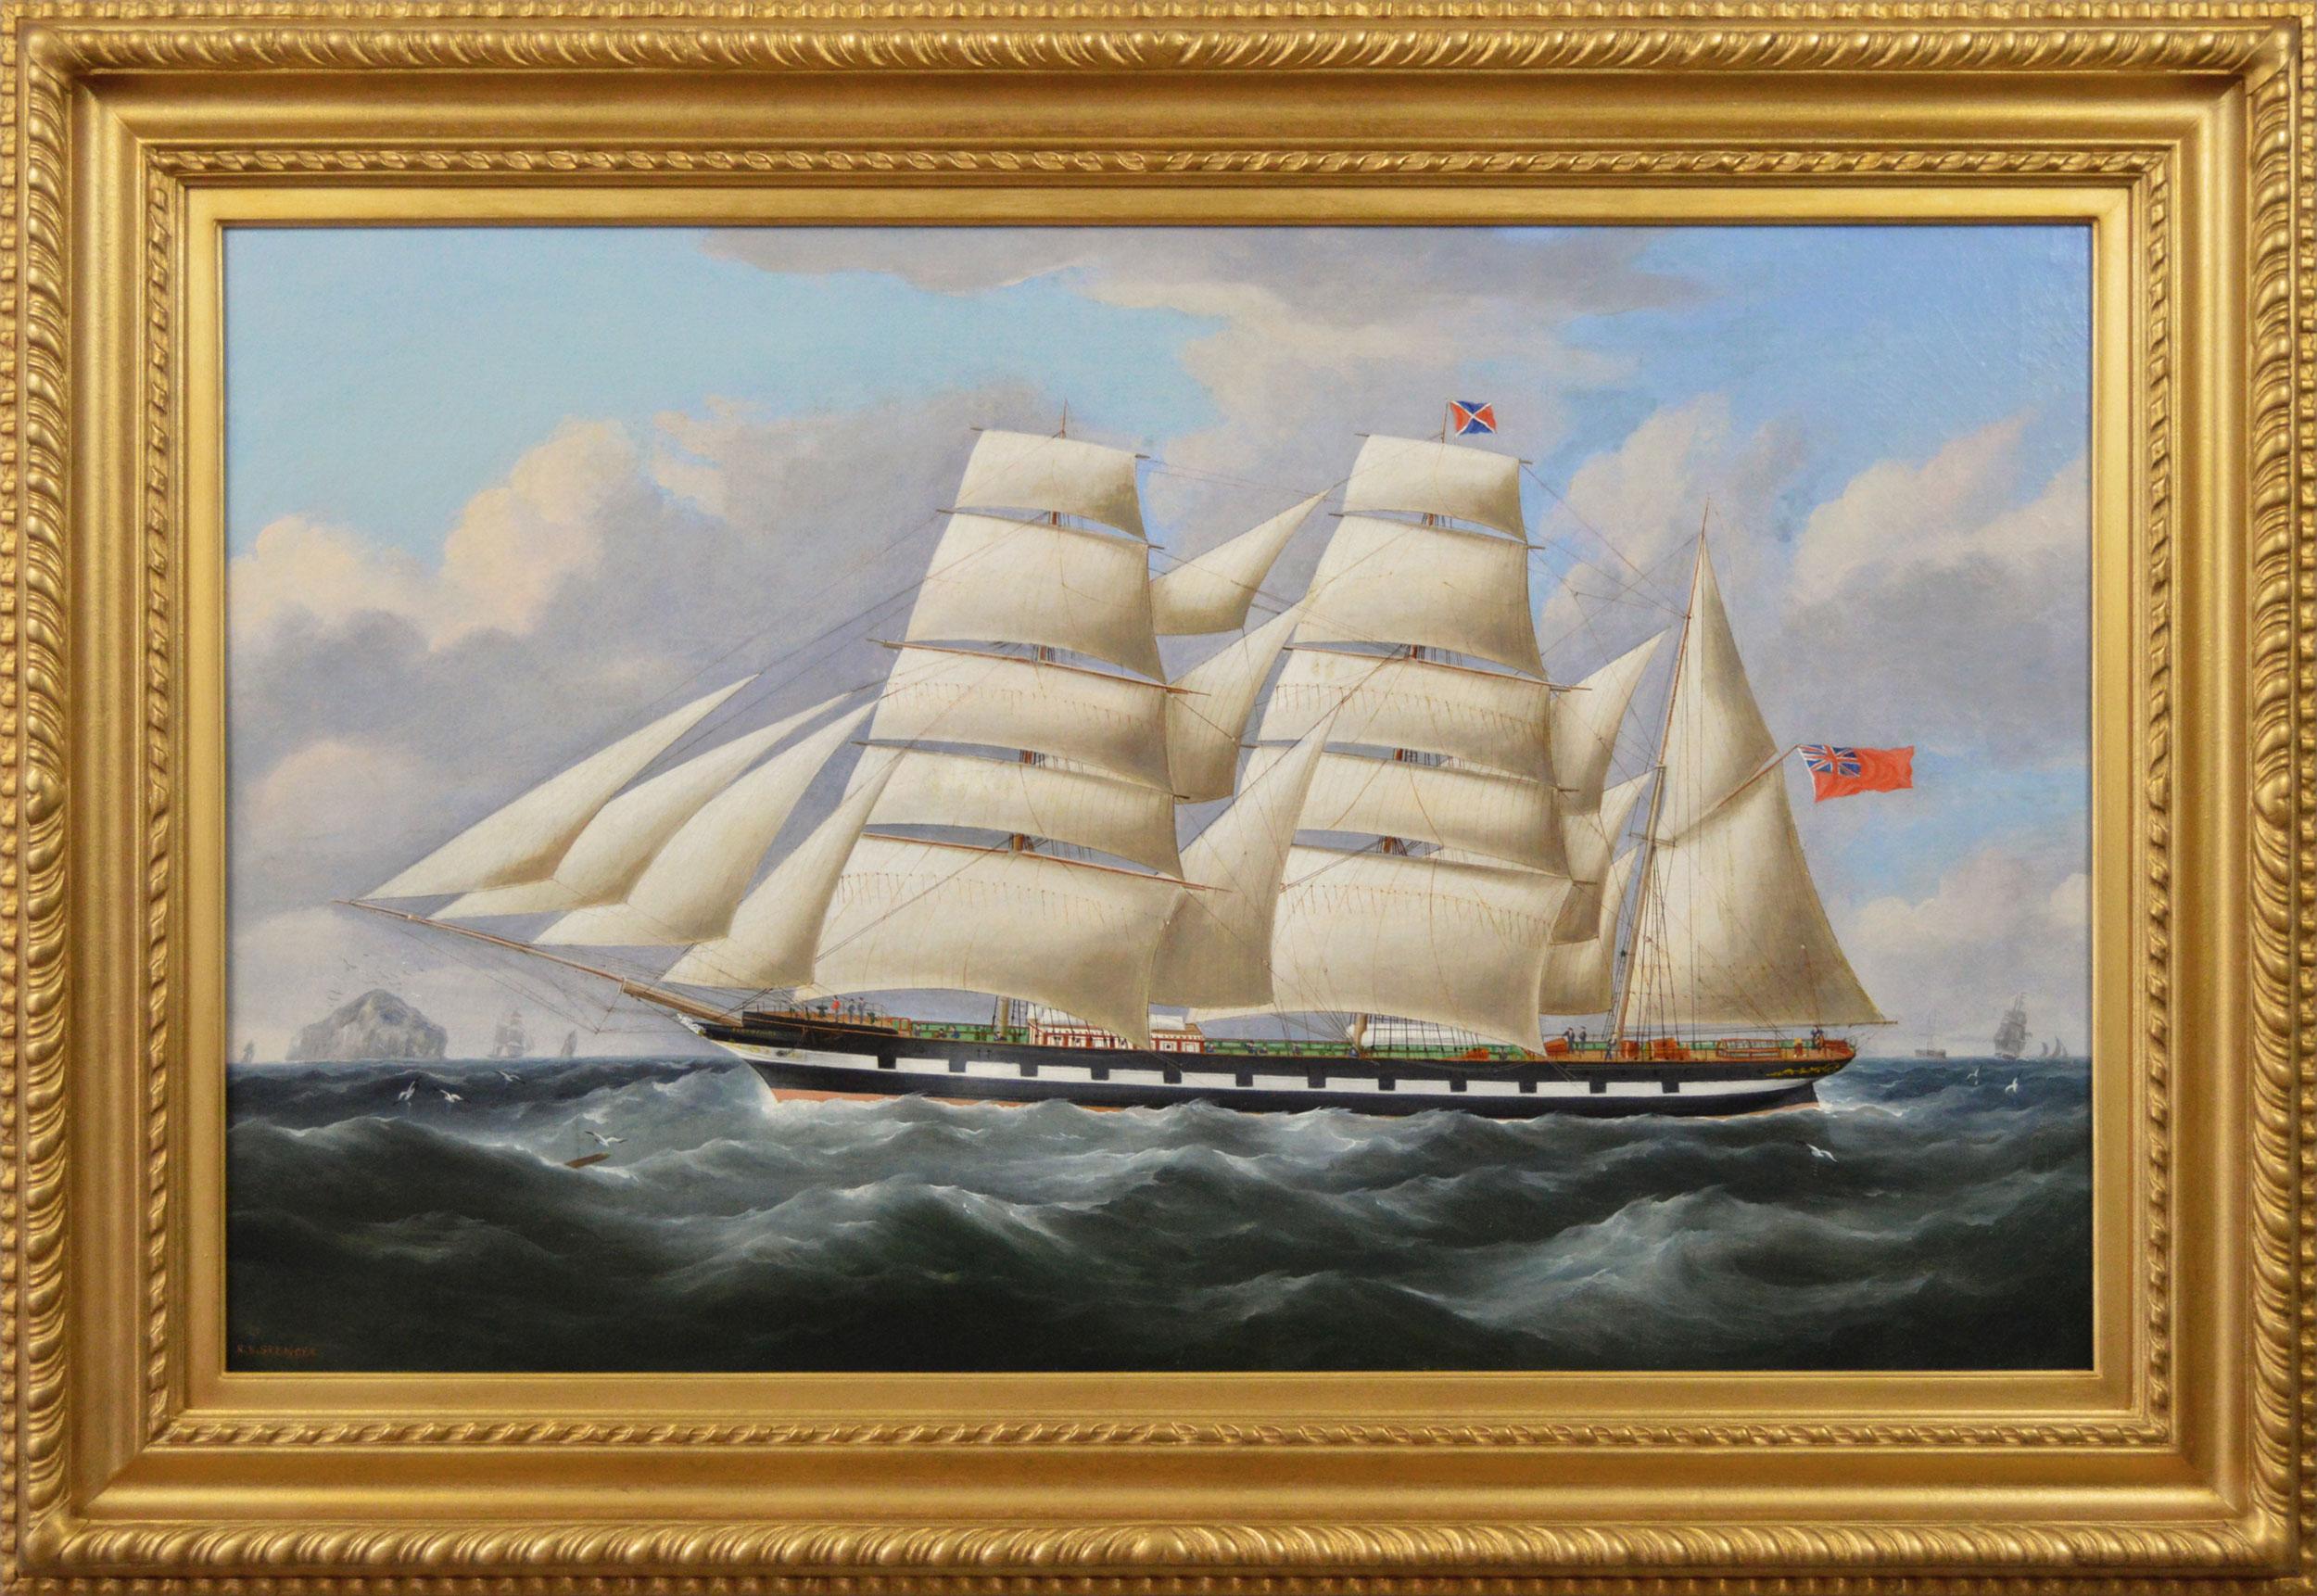 Landscape Painting Richard Ball Spencer - Peinture à l'huile du 19e siècle représentant un navire au large de la côte écossaise 